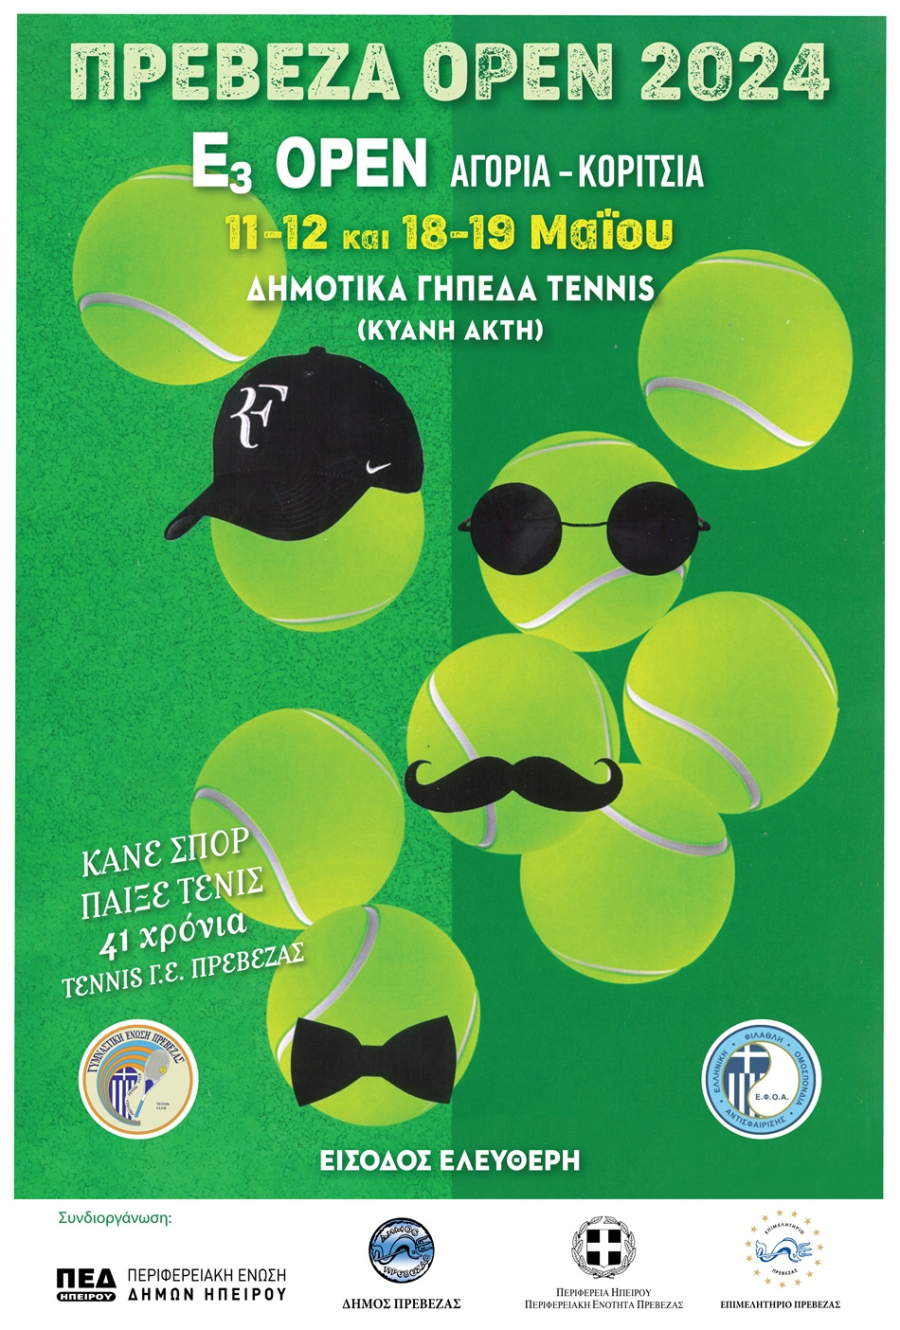 Ε3 OPEN πρωτάθλημα τένις στην Πρέβεζα στις 11-12 & 18-19 Μαΐου